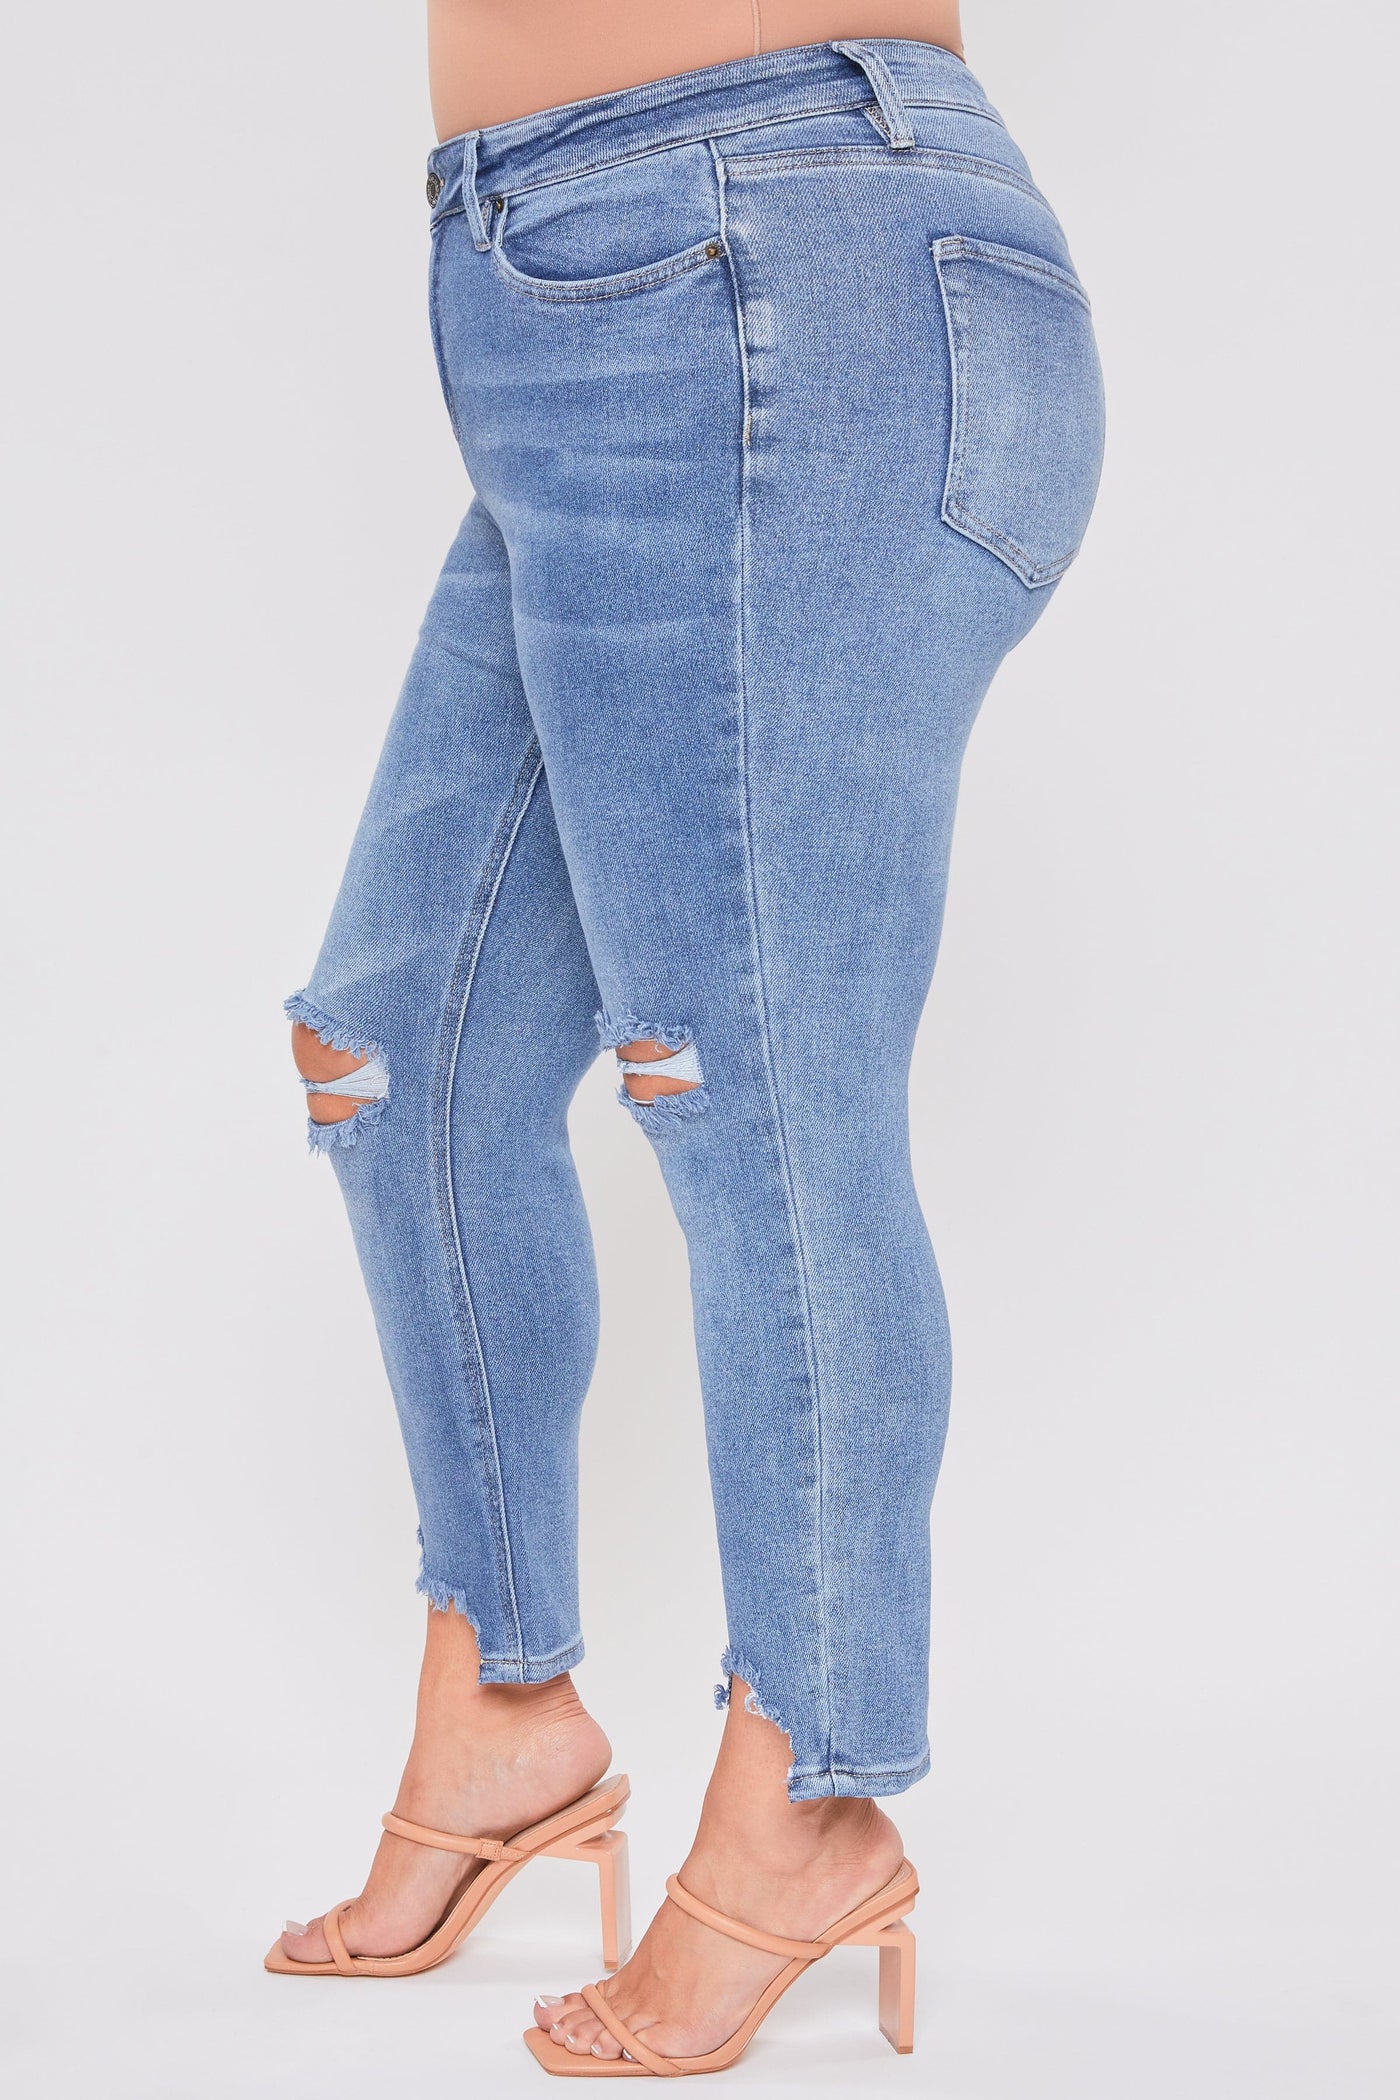 Women's Plus Size Dream Slim Straight Ankle Jeans With Hem Destruction-Sale